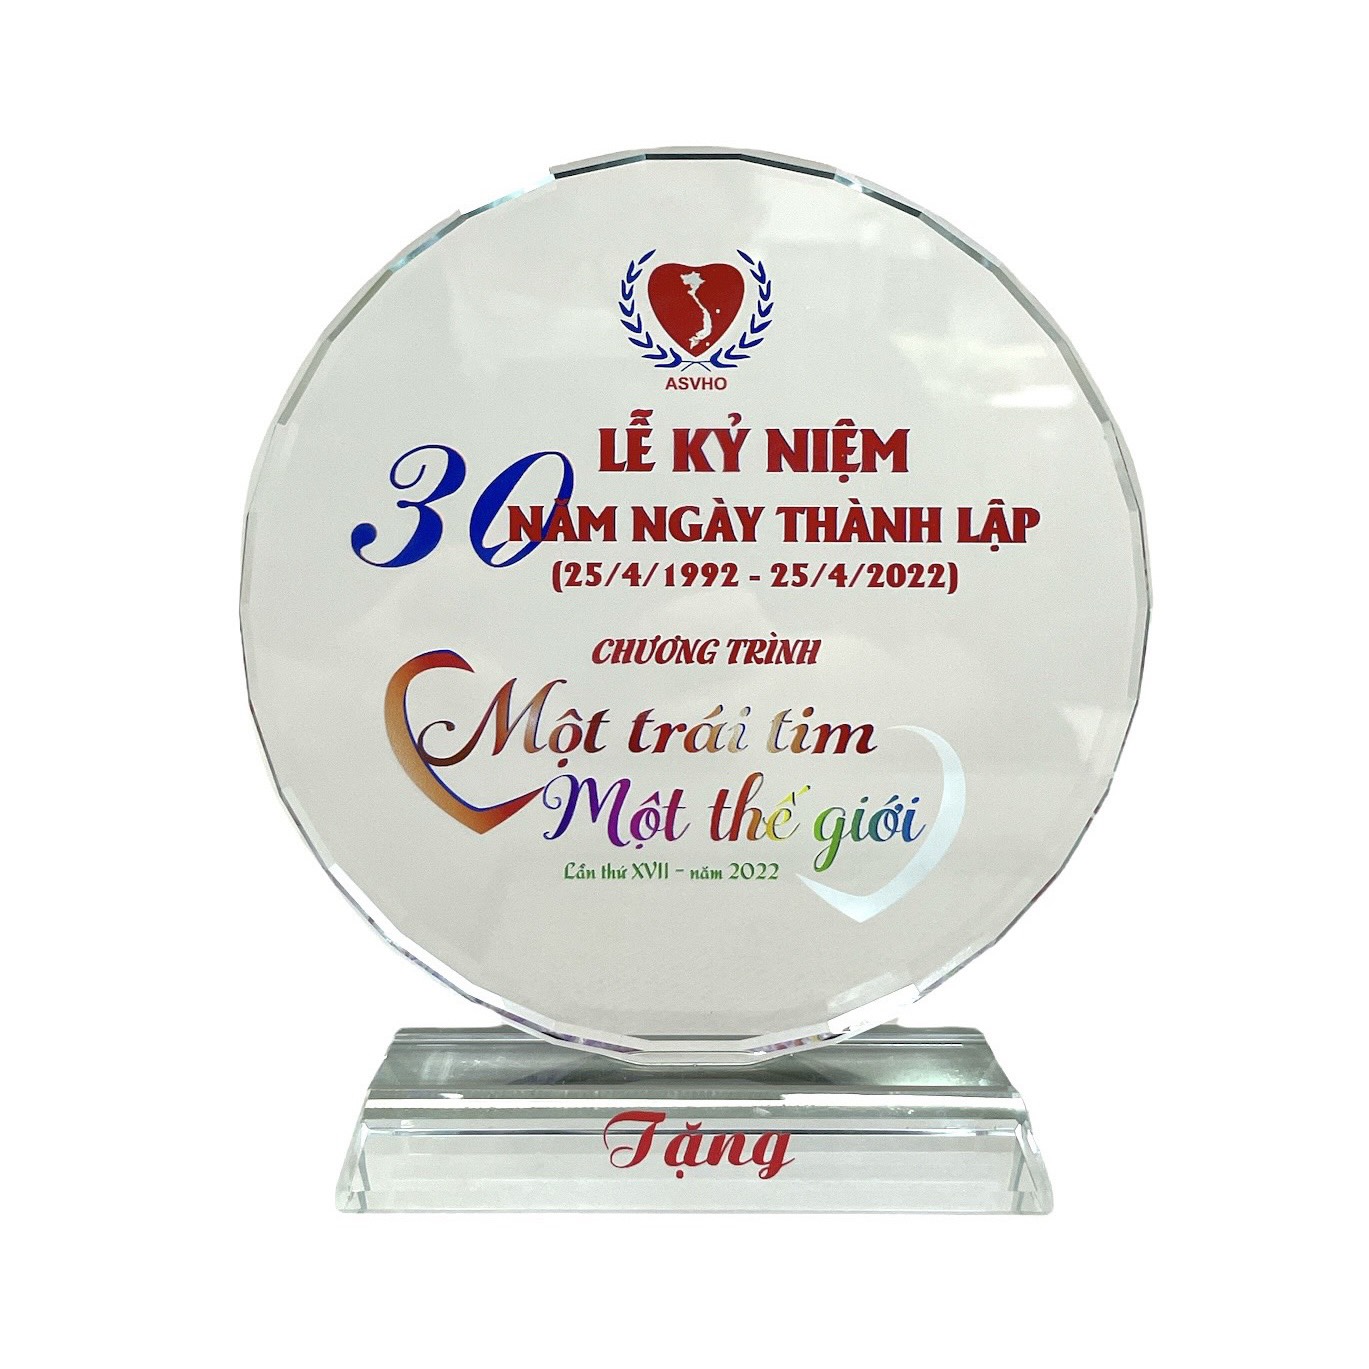 Kỷ niệm chương Chương trình “Một trái tim - Một thế giới” nhân Lễ kỷ niệm 30 năm thành lập (25/4/1992 - 25/4/2022)